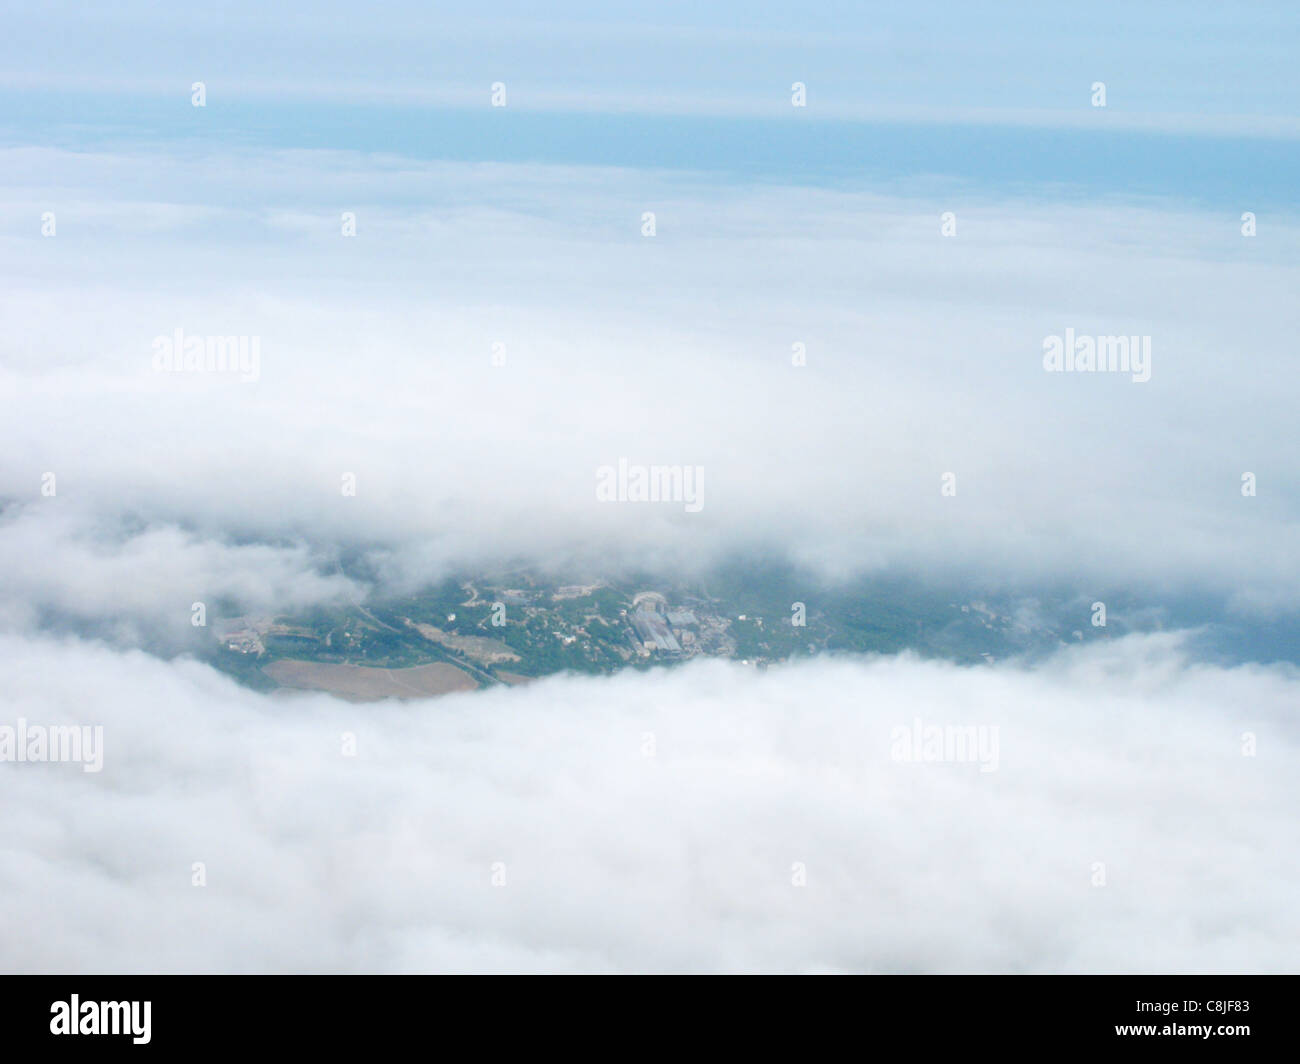 Al di sopra delle nuvole: vista panoramica dal Monte Foto Stock